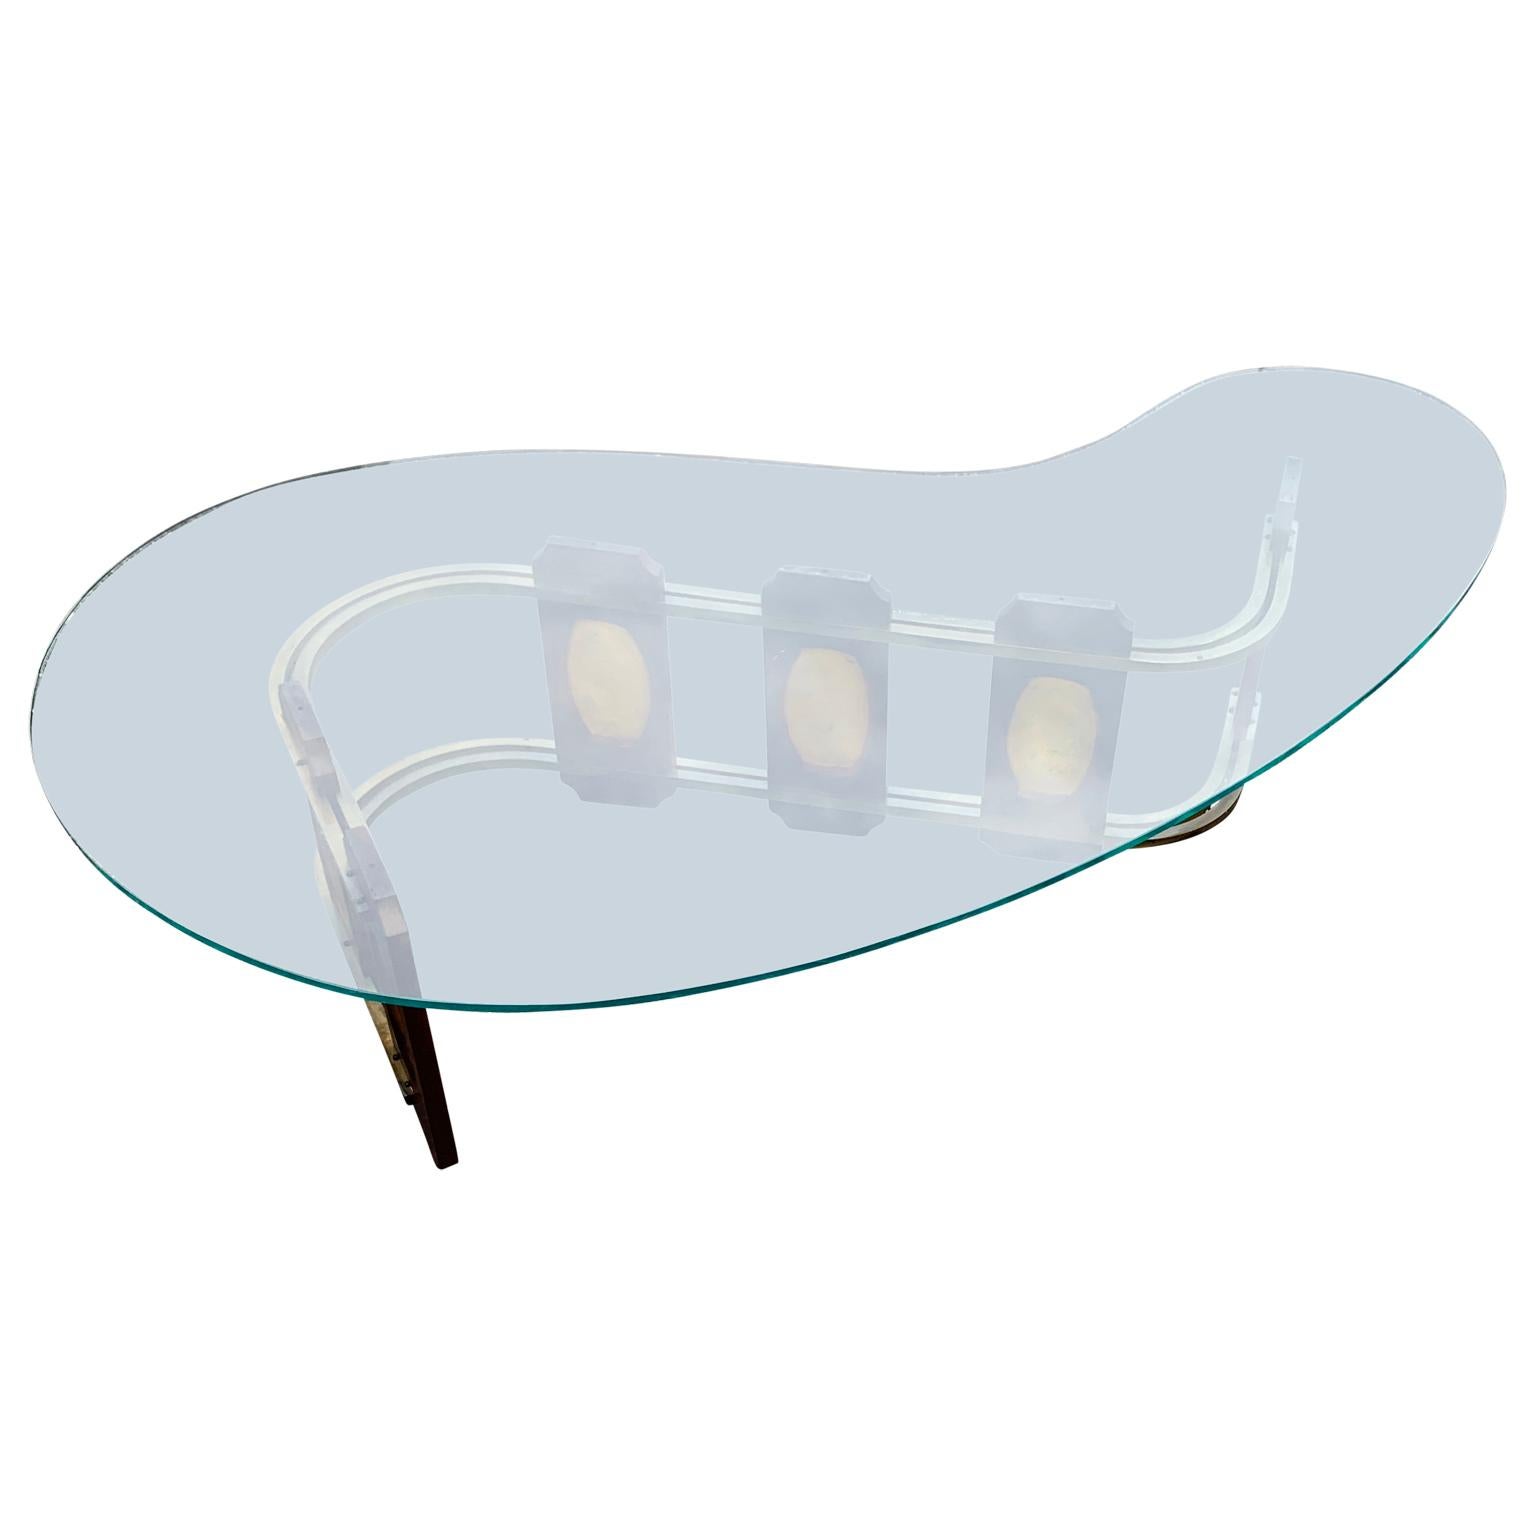 Mid-Century Modern skulpturale Vintage Niere förmigen Kaffee-Cocktail-Tisch

Die angegebenen Maße beziehen sich auf den eigentlichen Tischfuß, nicht auf die nierenförmige Glasplatte.
Die Nieren-Glasplatte misst B36